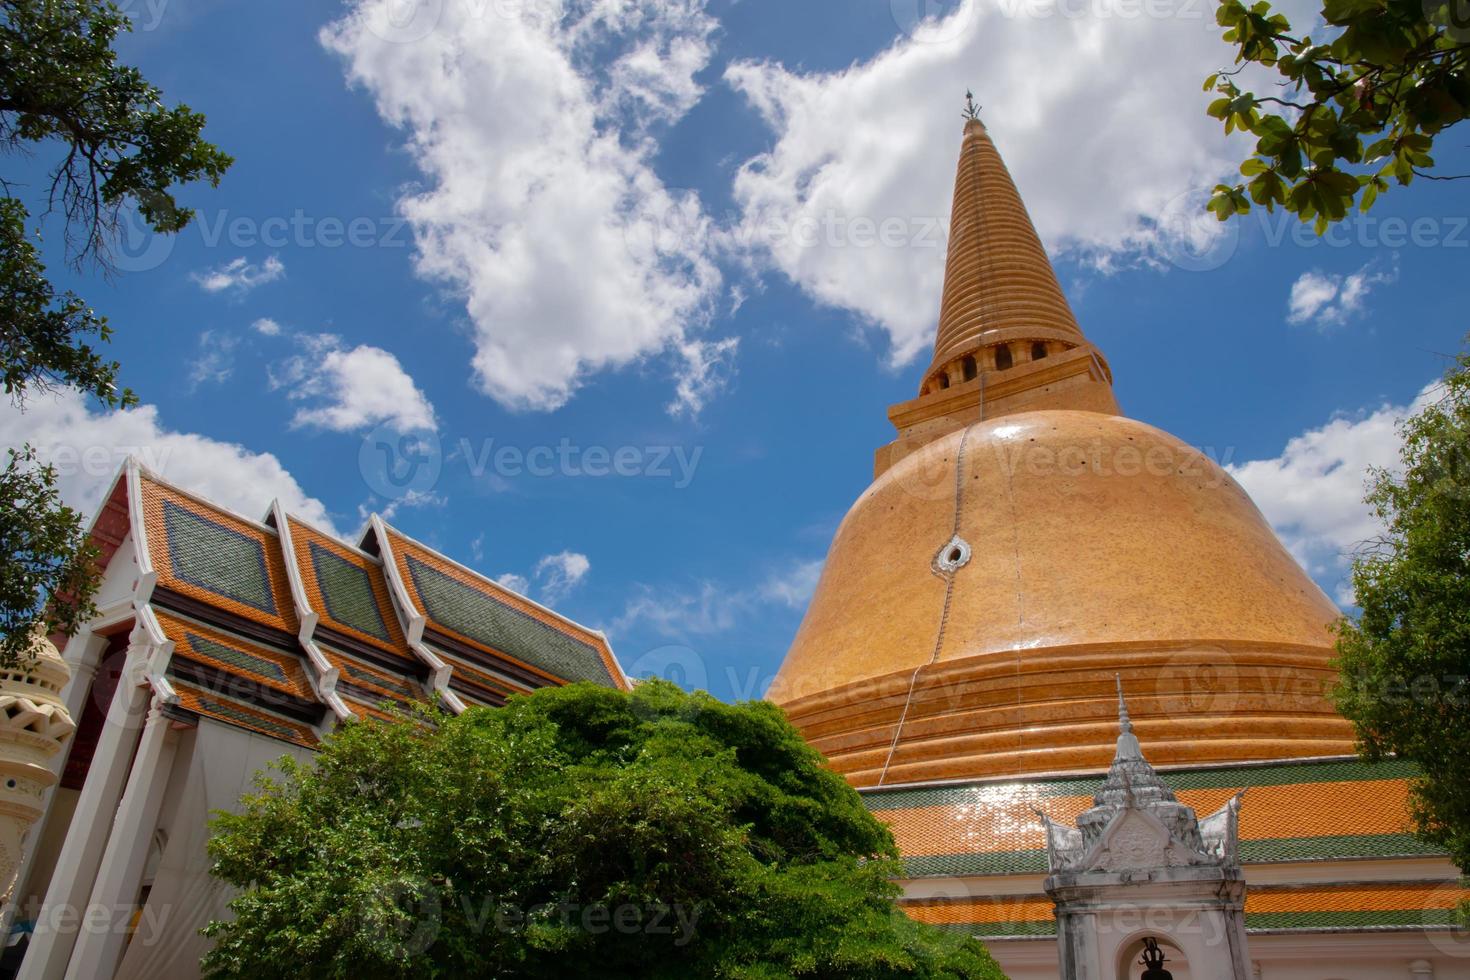 famosa pagoda antigua y templo en tailandia, arquitectura del antiguo buda, destino turístico emblemático de vacaciones, idioma local llamado wat. foto